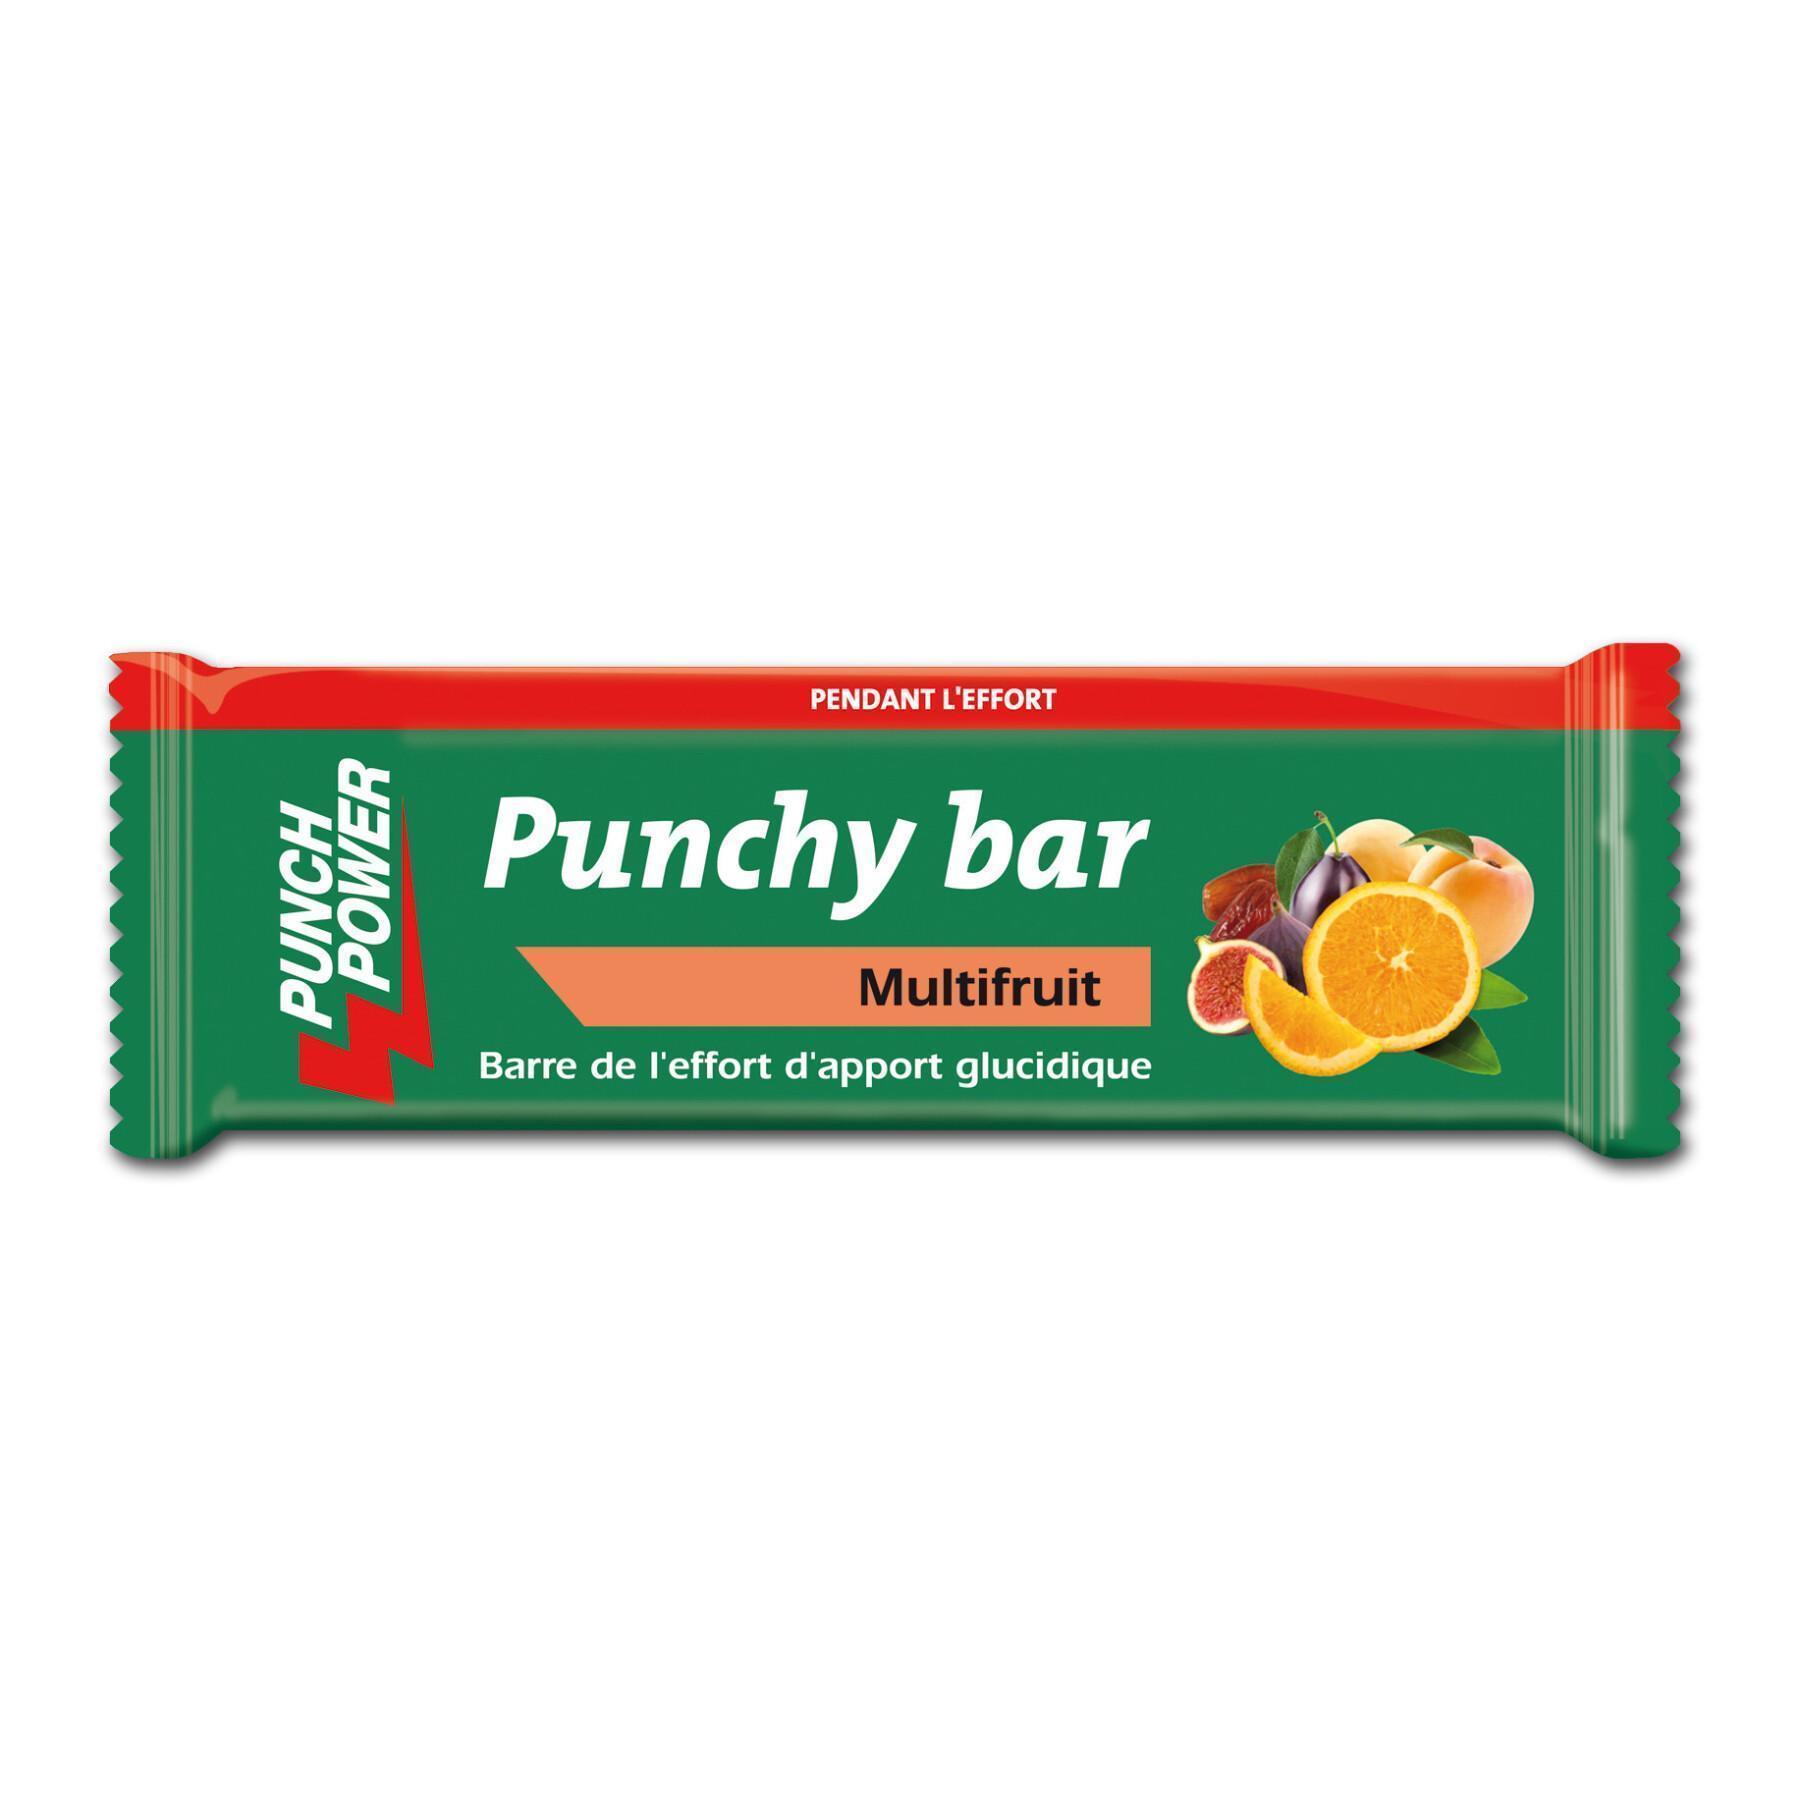 Muestra 40 barras de energía Punch Power Punchybar Multifruit